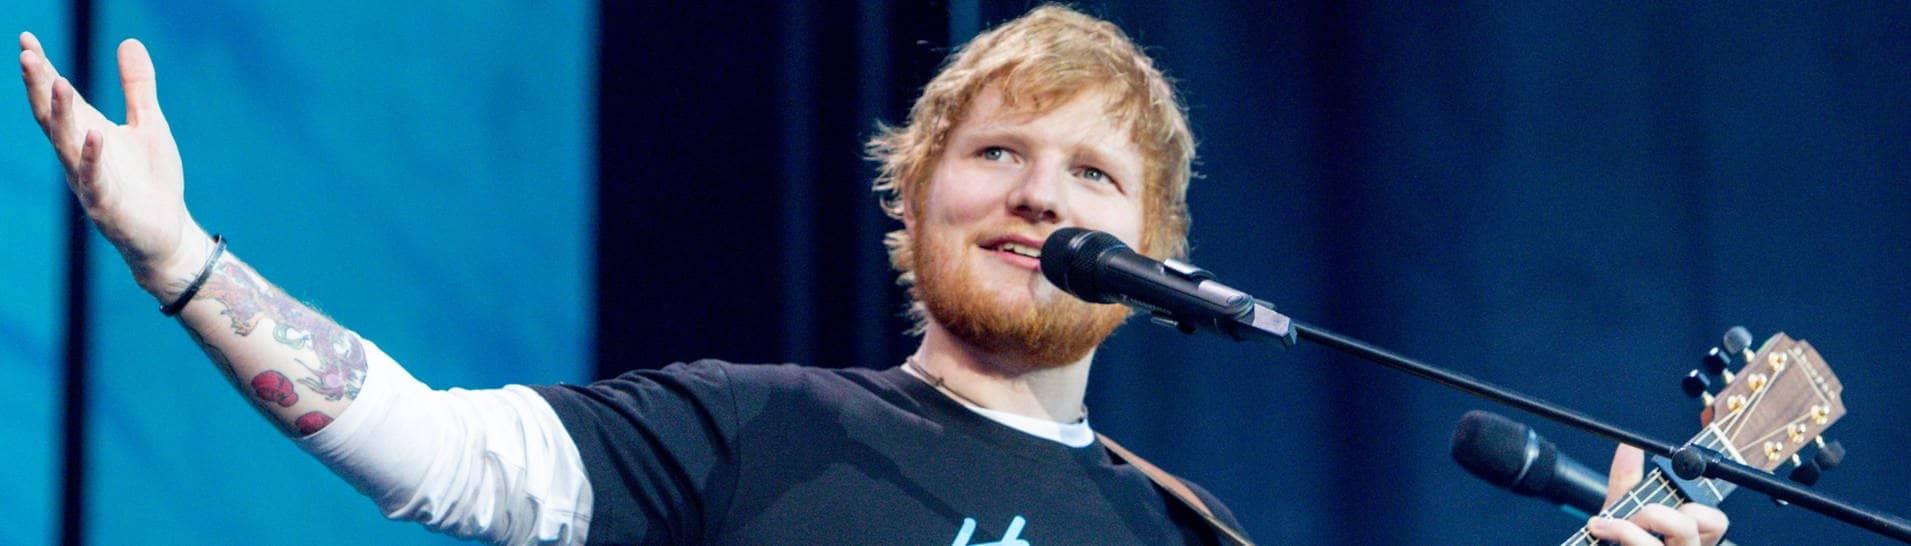 Der britische Singer-Songwriter Ed Sheeran gibt ein Konzert im Wanda Metropolitano Stadion.